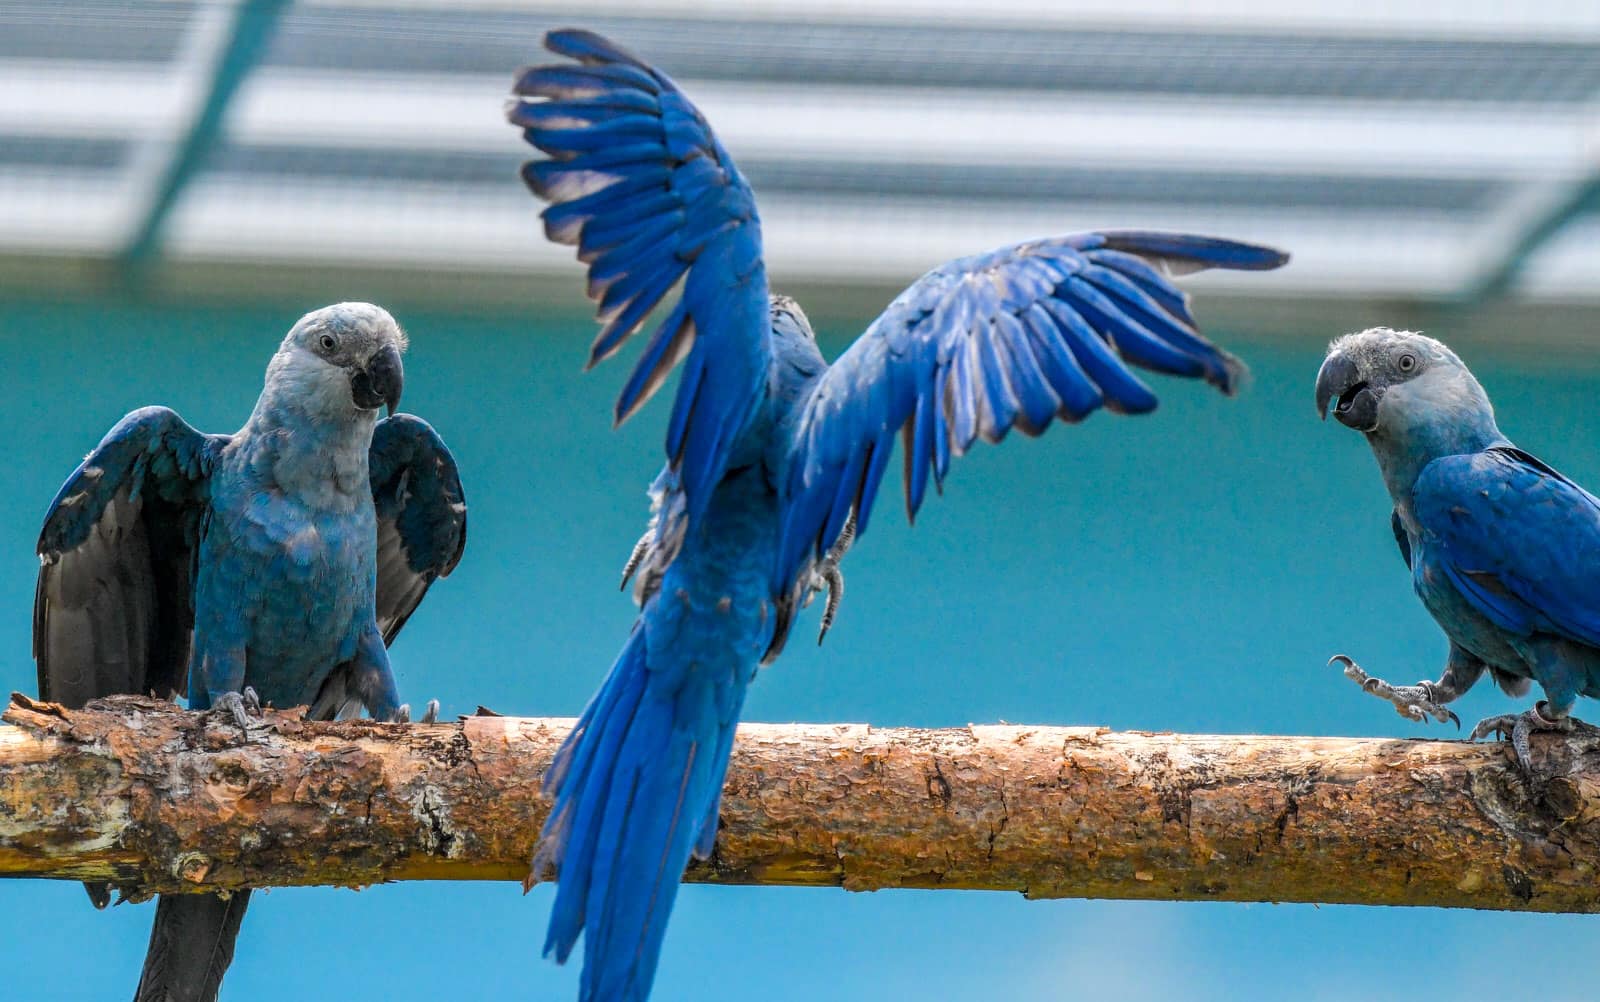 Loài vẹt có khả năng mổ xuyên qua vỏ dừa được săn lùng với giá 14.000 USD